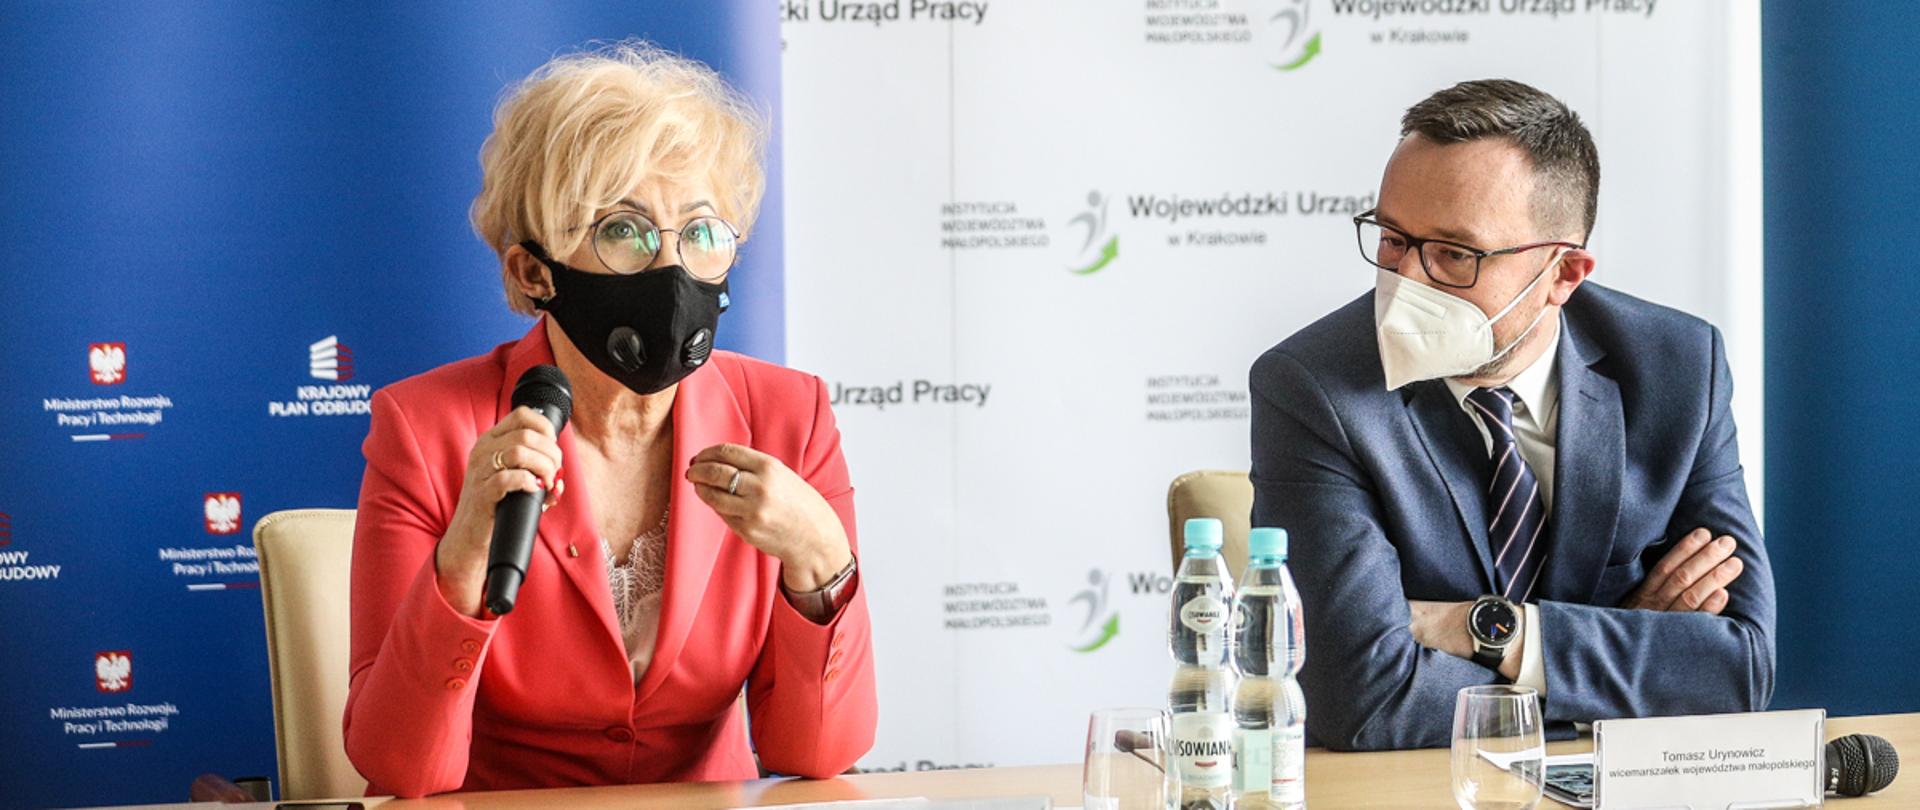 O zmianach na rynku pracy podczas konsultacji KPO w Krakowie mówiła wiceminister Iwona Michałek